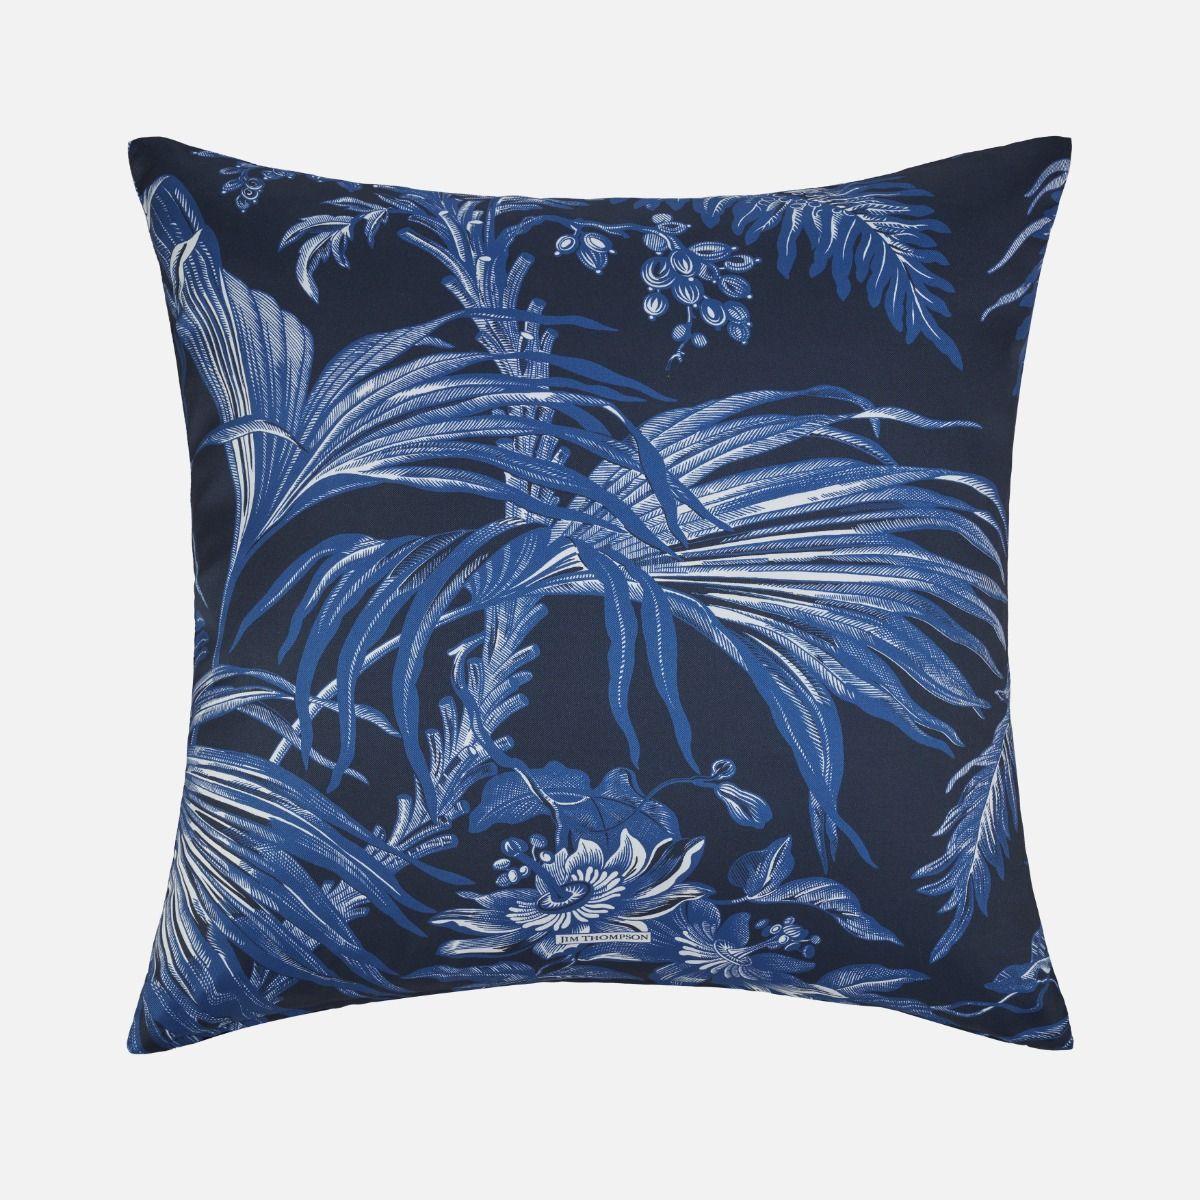 Palm Jungle Silk Cushion Cover 18" - Navy Blue